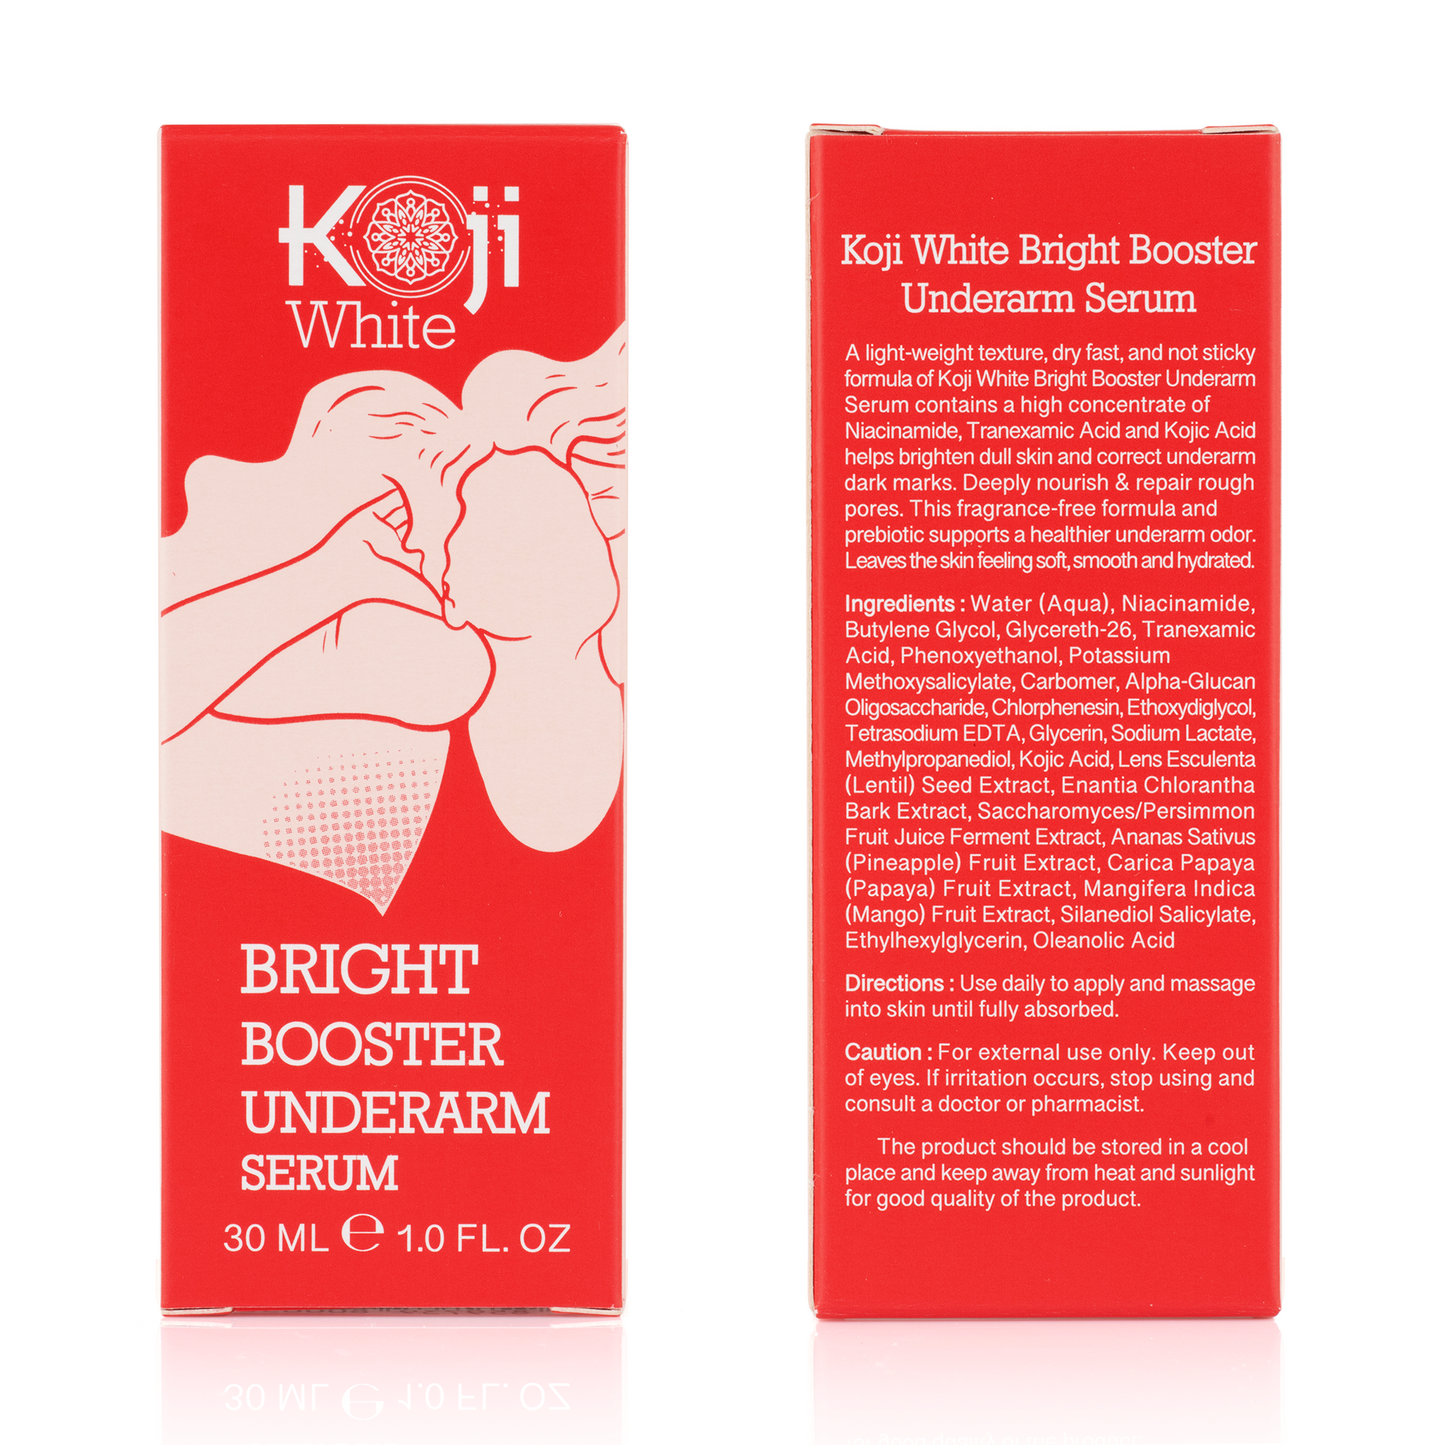 Koji White Bright Booster Underarm Serum (1 Bottle)